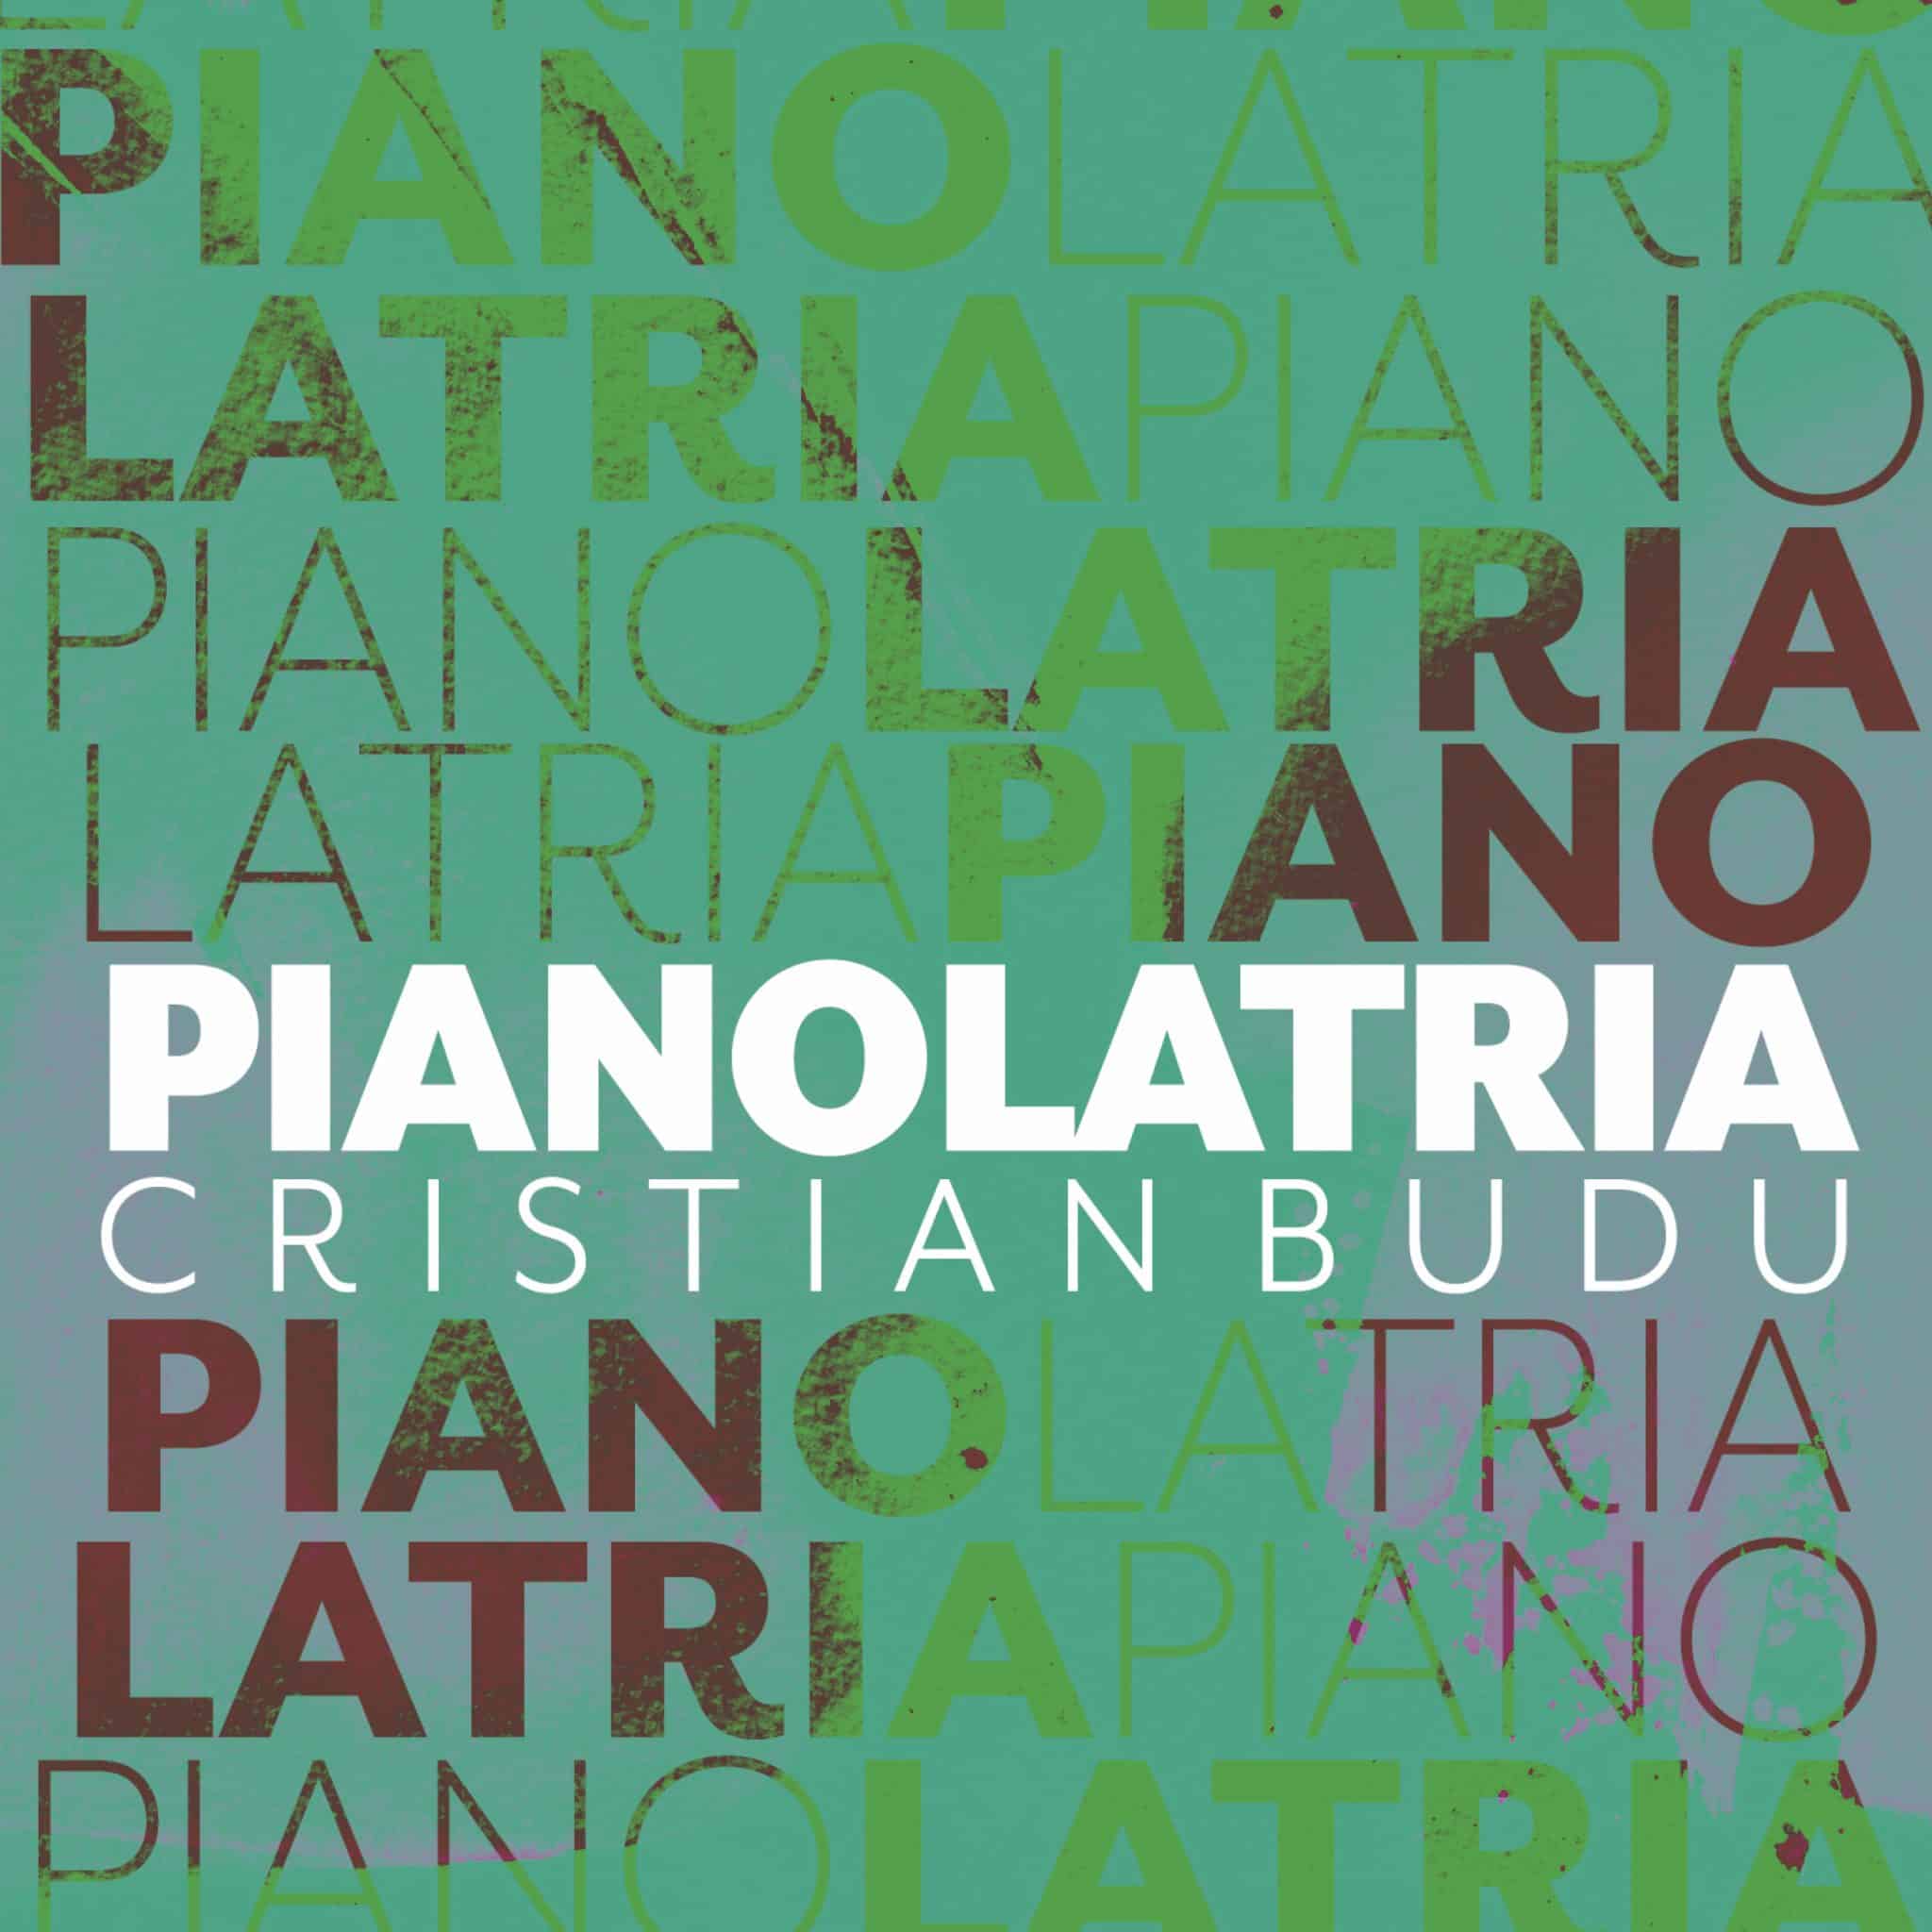 revistaprosaversoearte.com - Selo Sesc apresenta 'Pianolatria', álbum de Cristian Budu